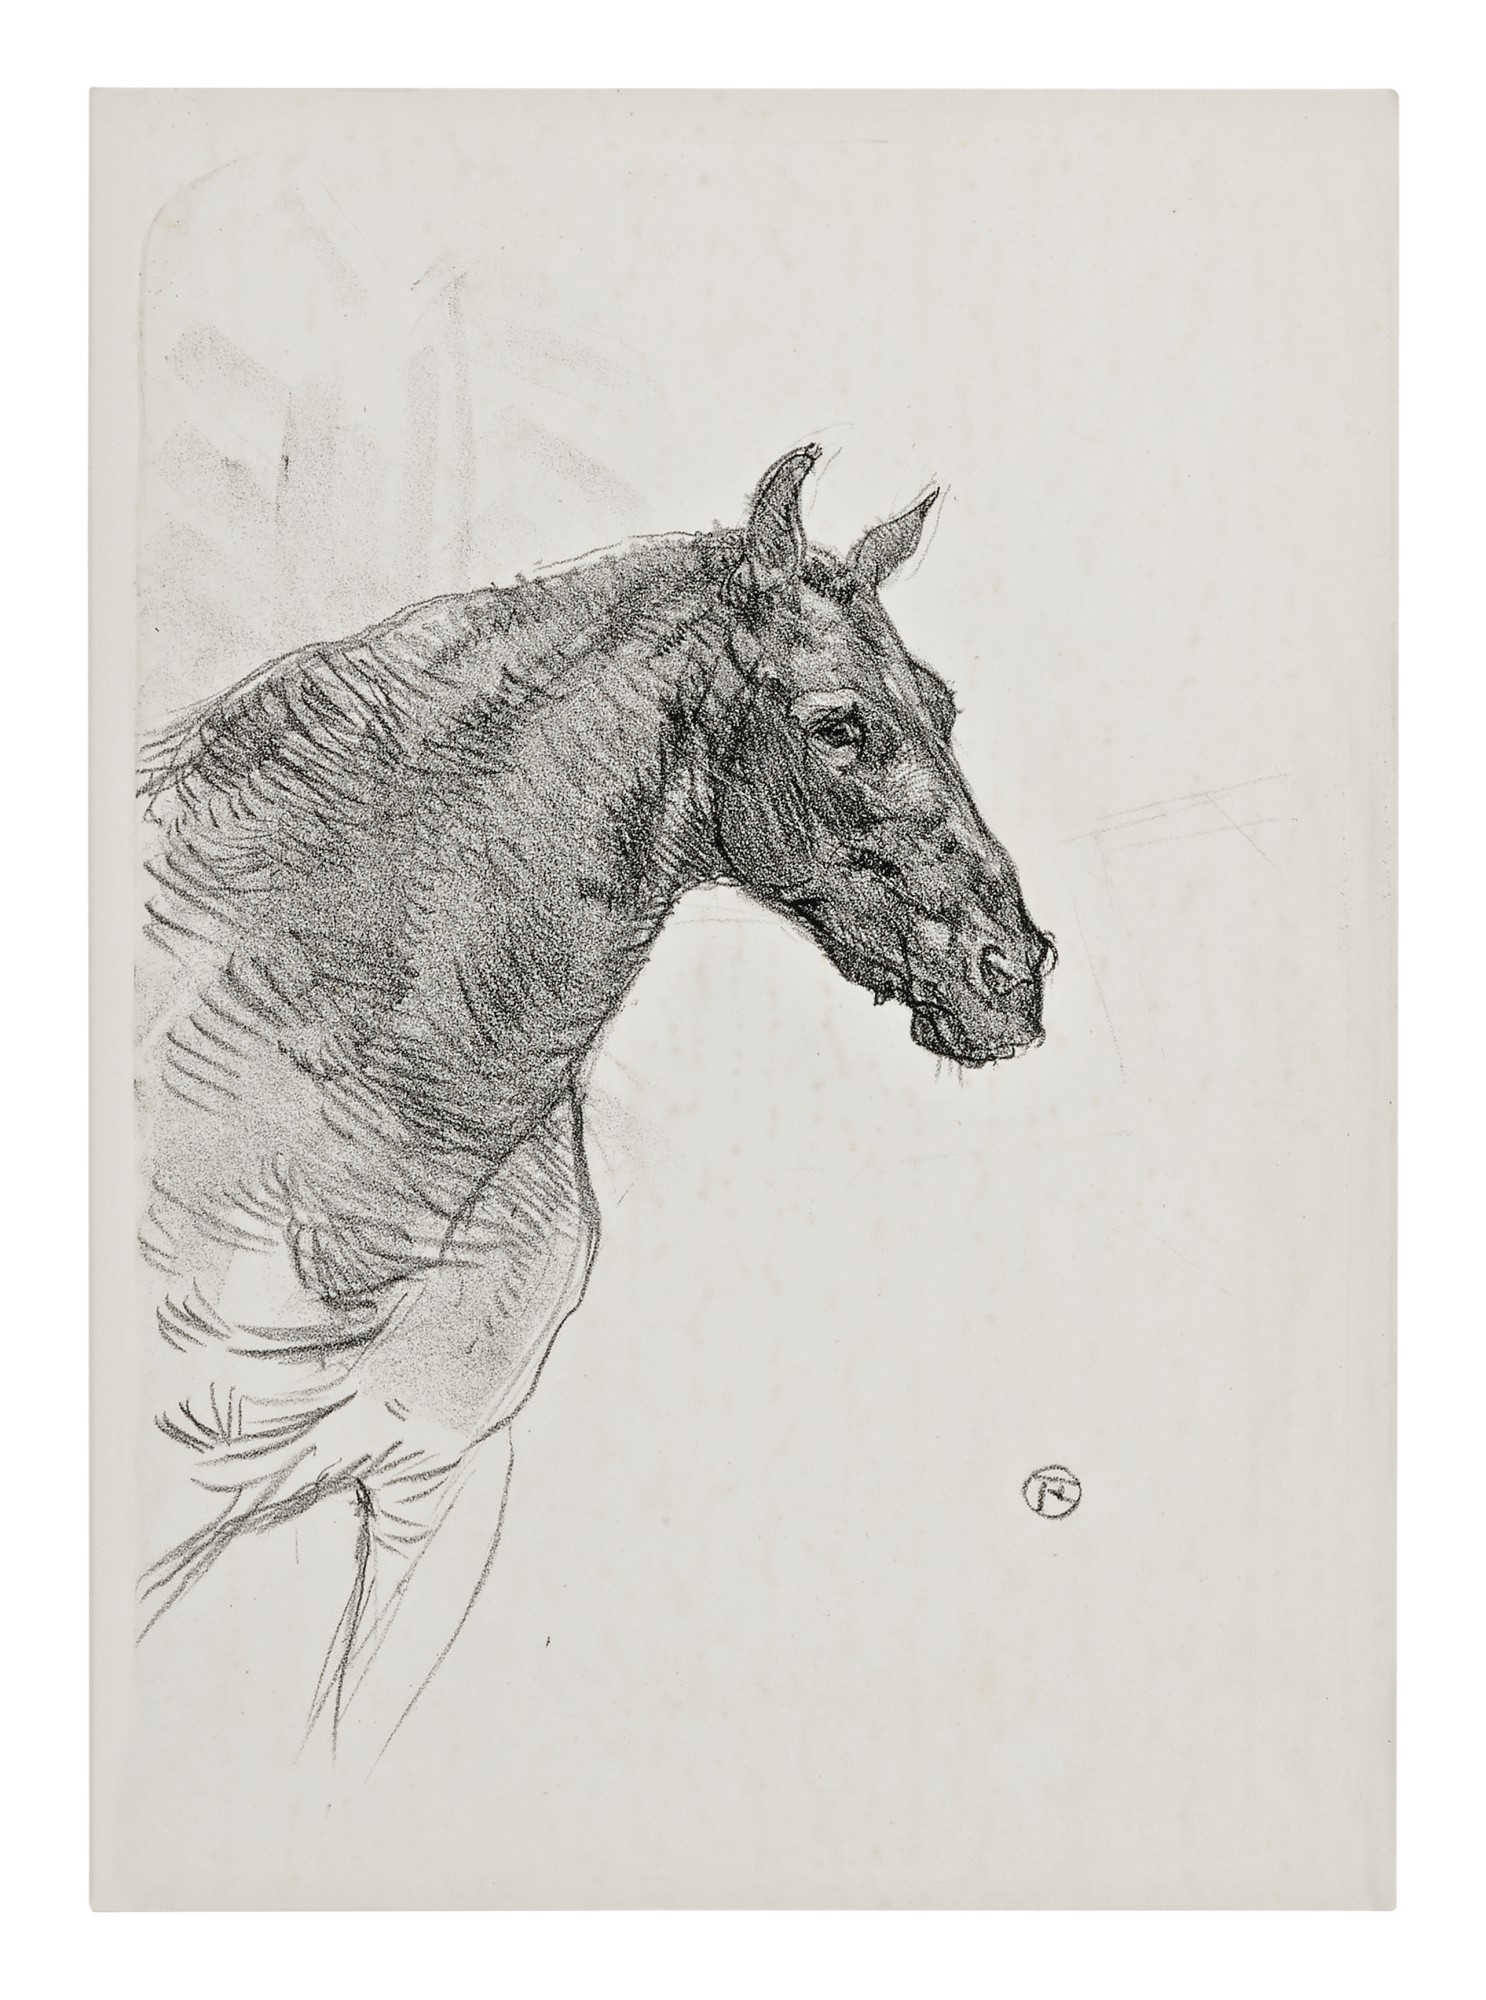 LE PONEY PHILIBERT (DELTEIL 224; ADRIANI 301; WITTROCK 284) by Henri de Toulouse-Lautrec, 1898